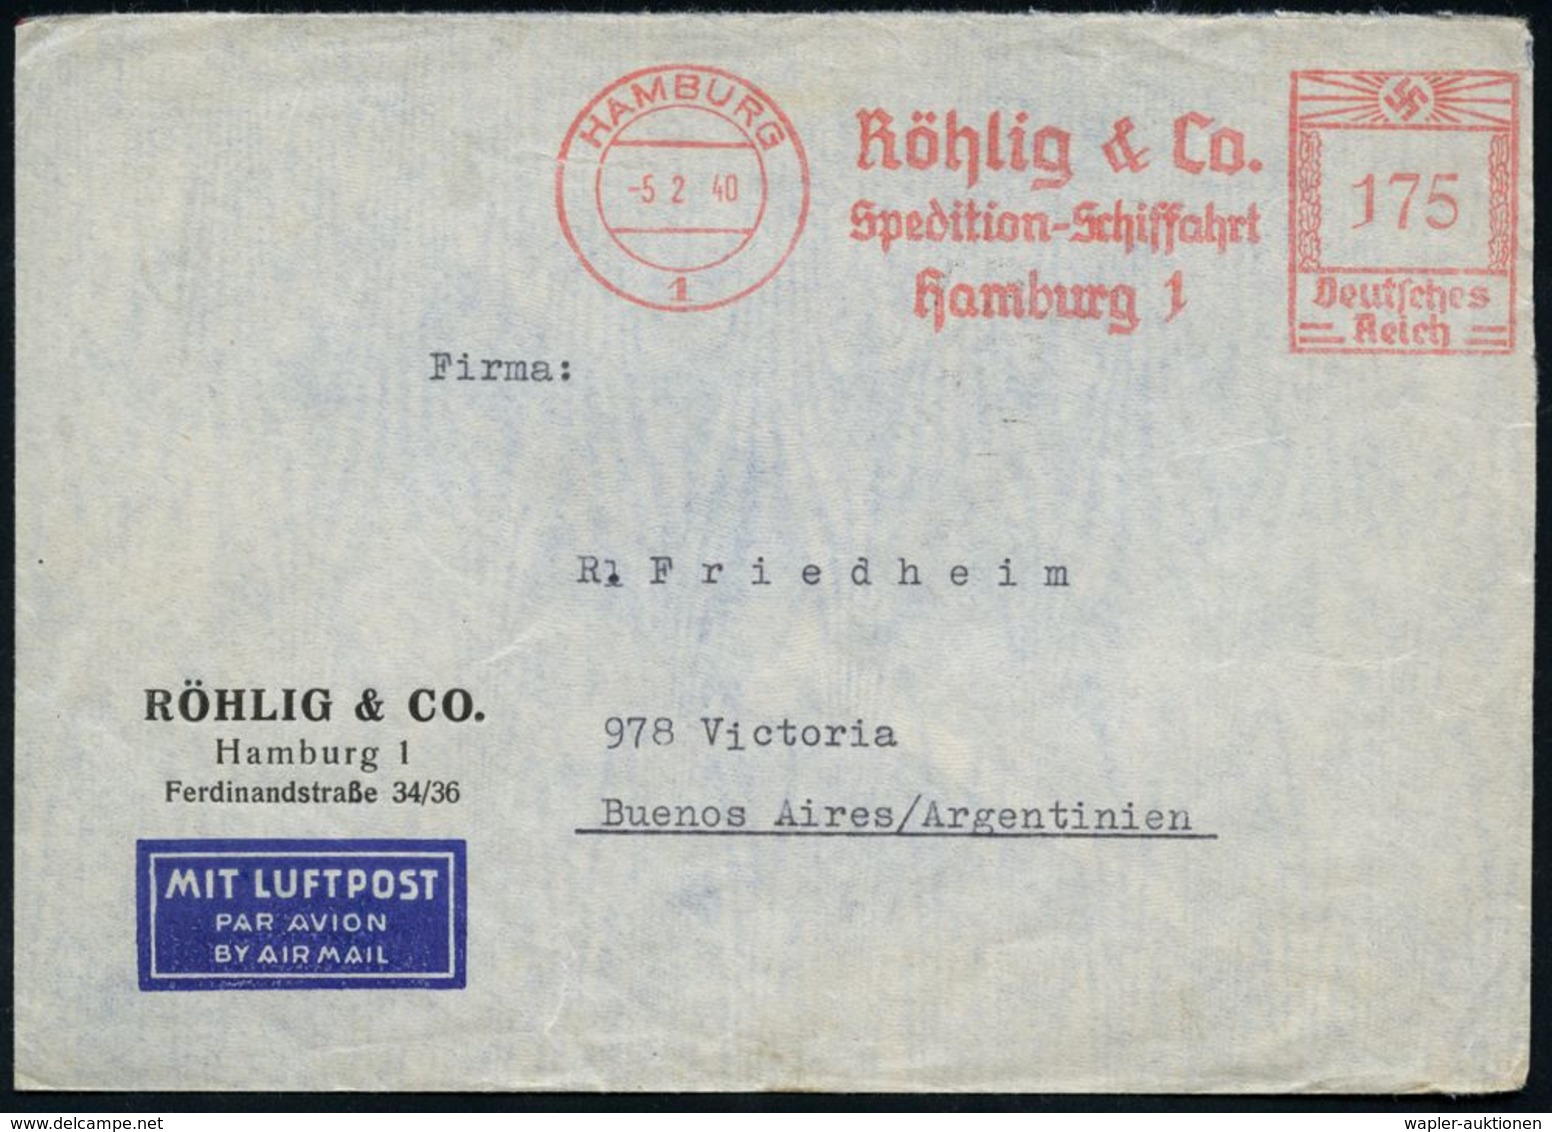 HAMBURG/ 1/ Röhlig & Co/ Spedition-Schiffahrt 1940 (5.2.) AFS 175 Pf. + Rs. Zensur-Streifen "Geöffnet/OKW" (= Ffm., Rie. - Autres (Air)